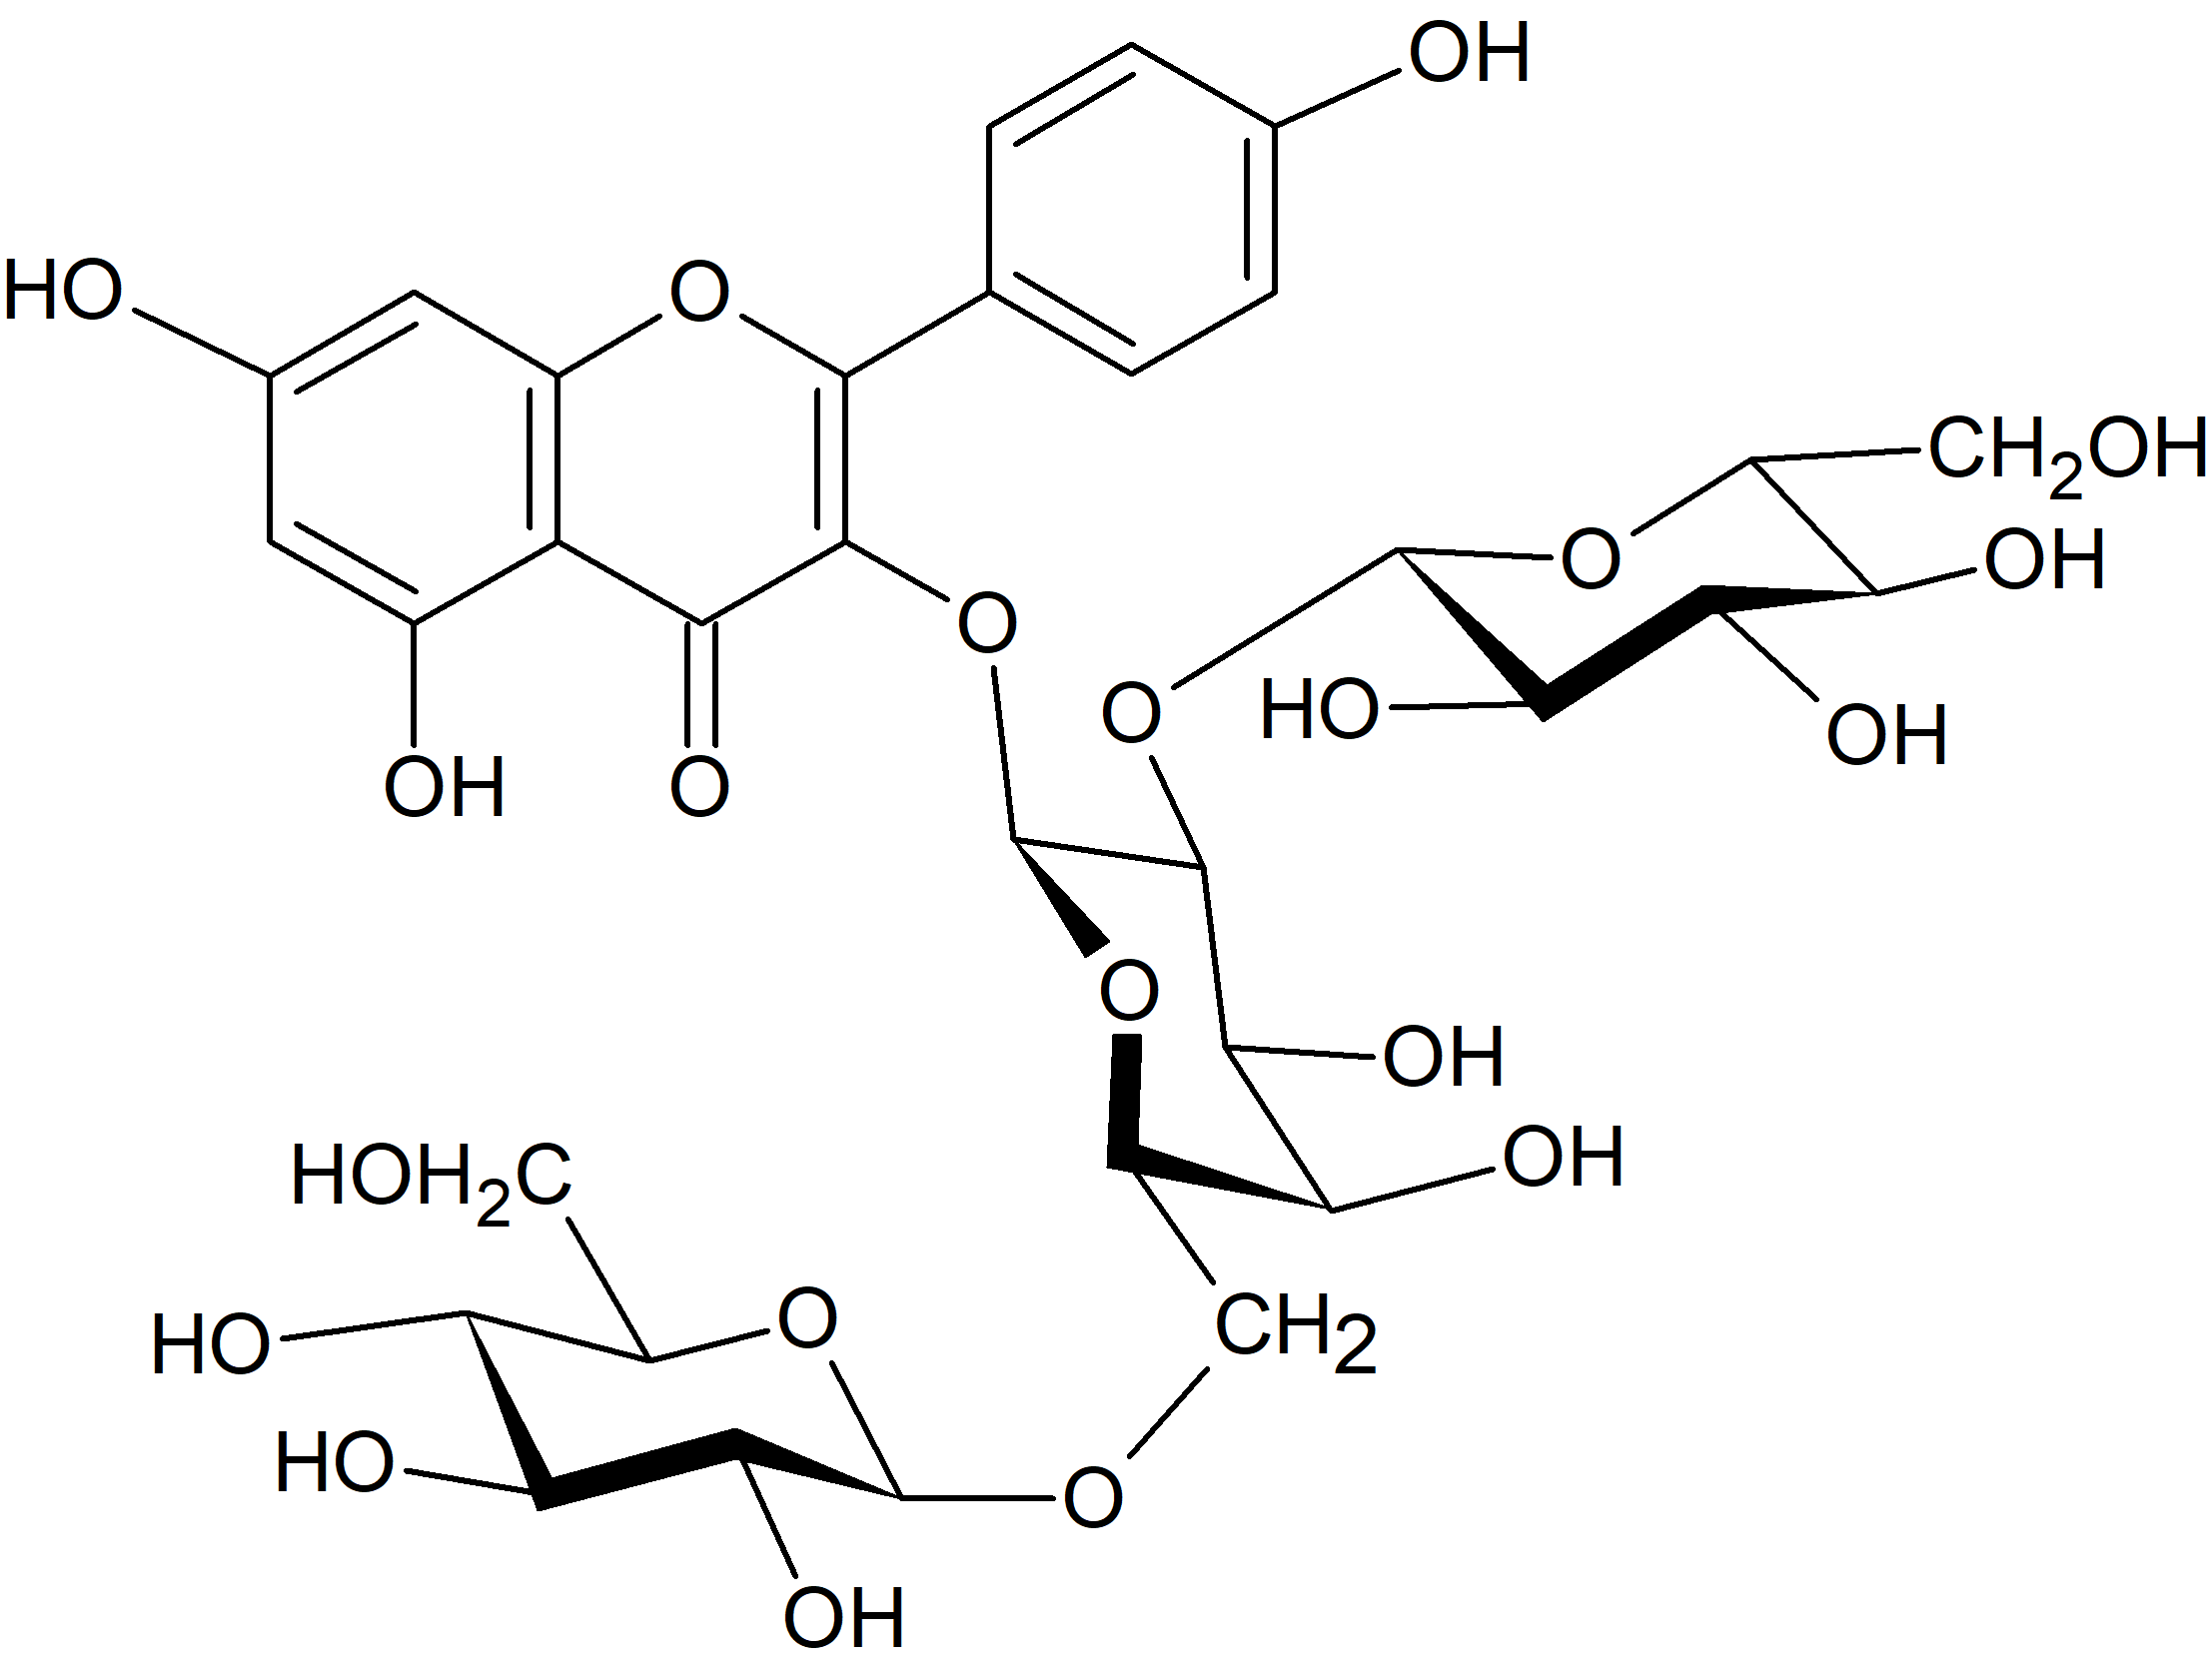 Kaempferol 3-O-glucosyl-(1→2)-[glucosyl-(1→6)-galactoside]